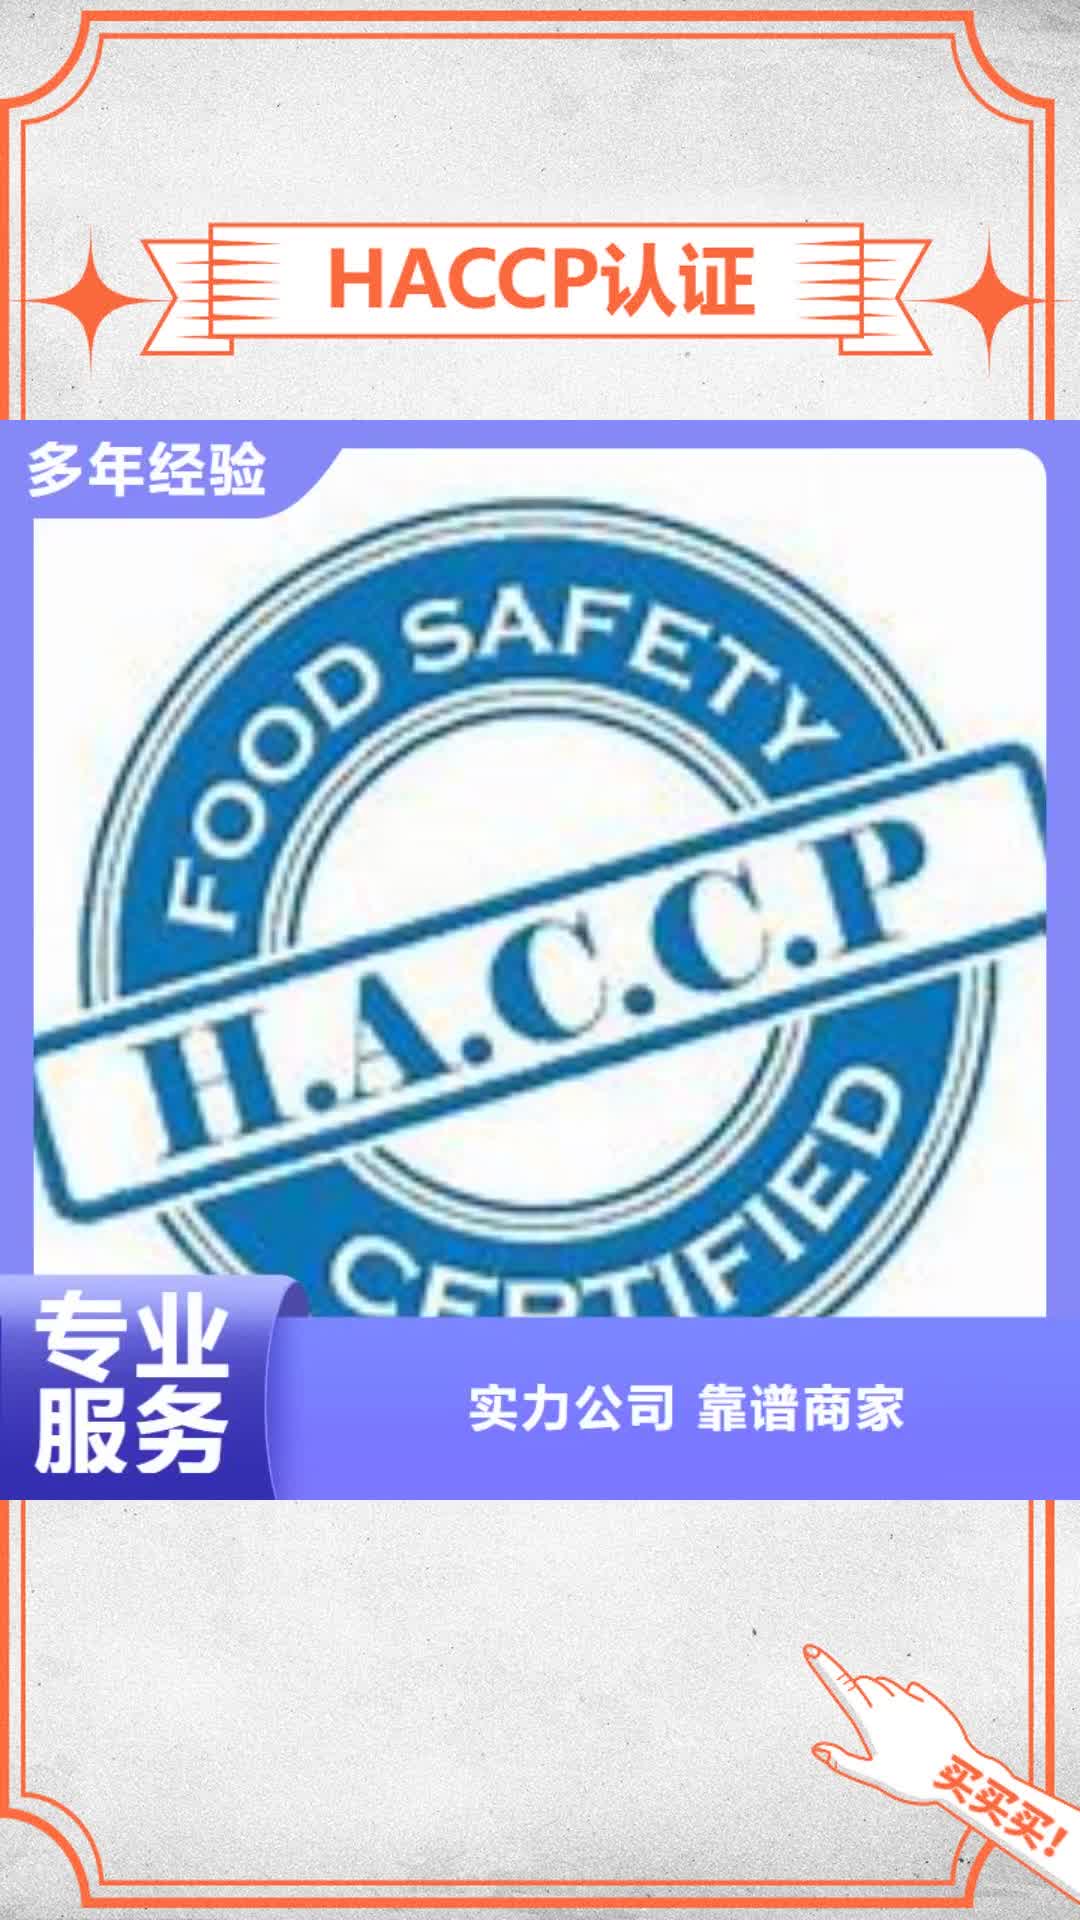 汉中【HACCP认证】,ISO14000\ESD防静电认证好评度高